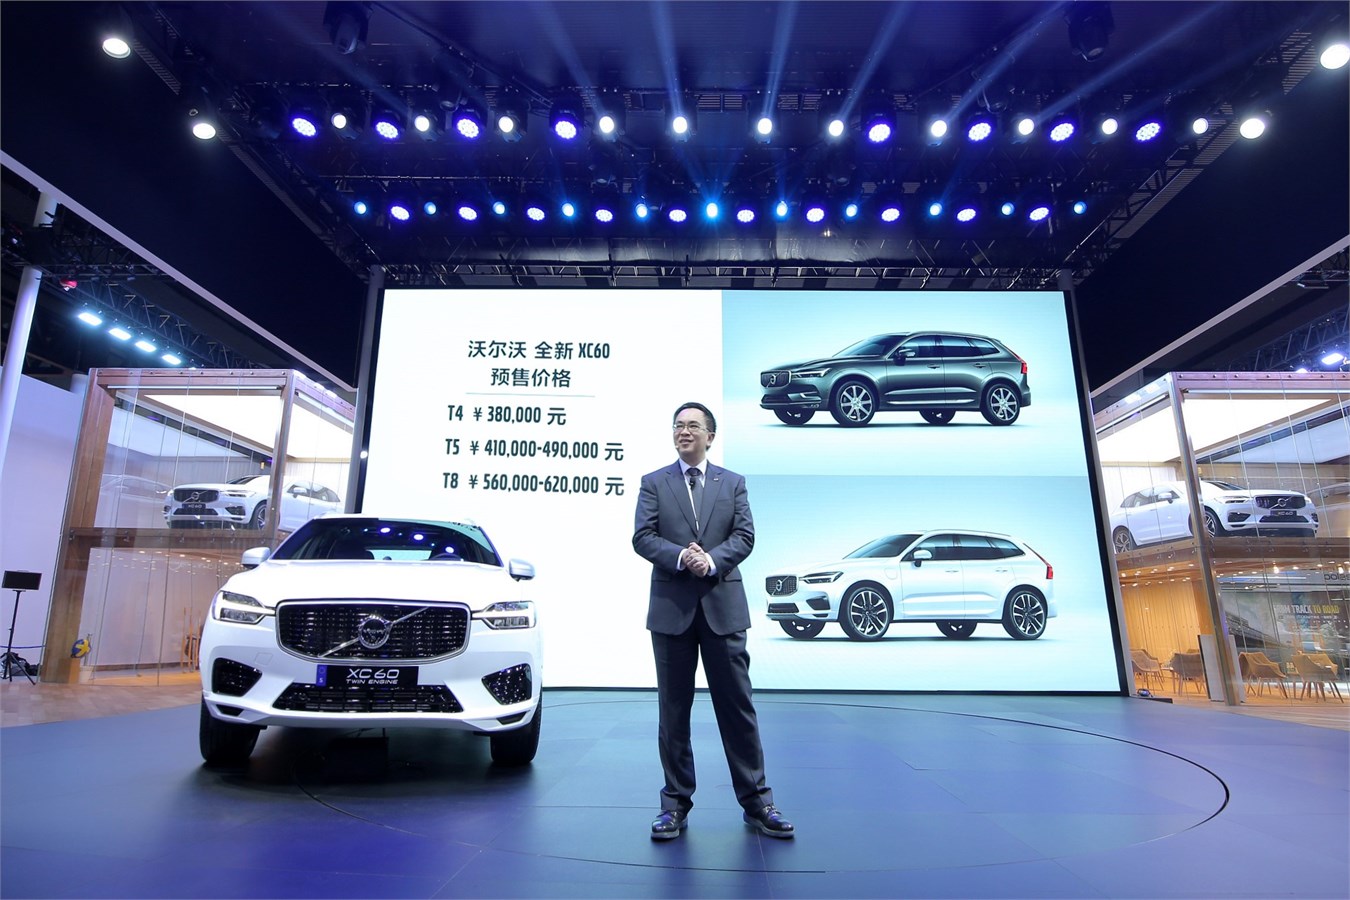 沃尔沃汽车集团大中华区销售公司总裁陈立哲先生公布全新XC60预售指导价格